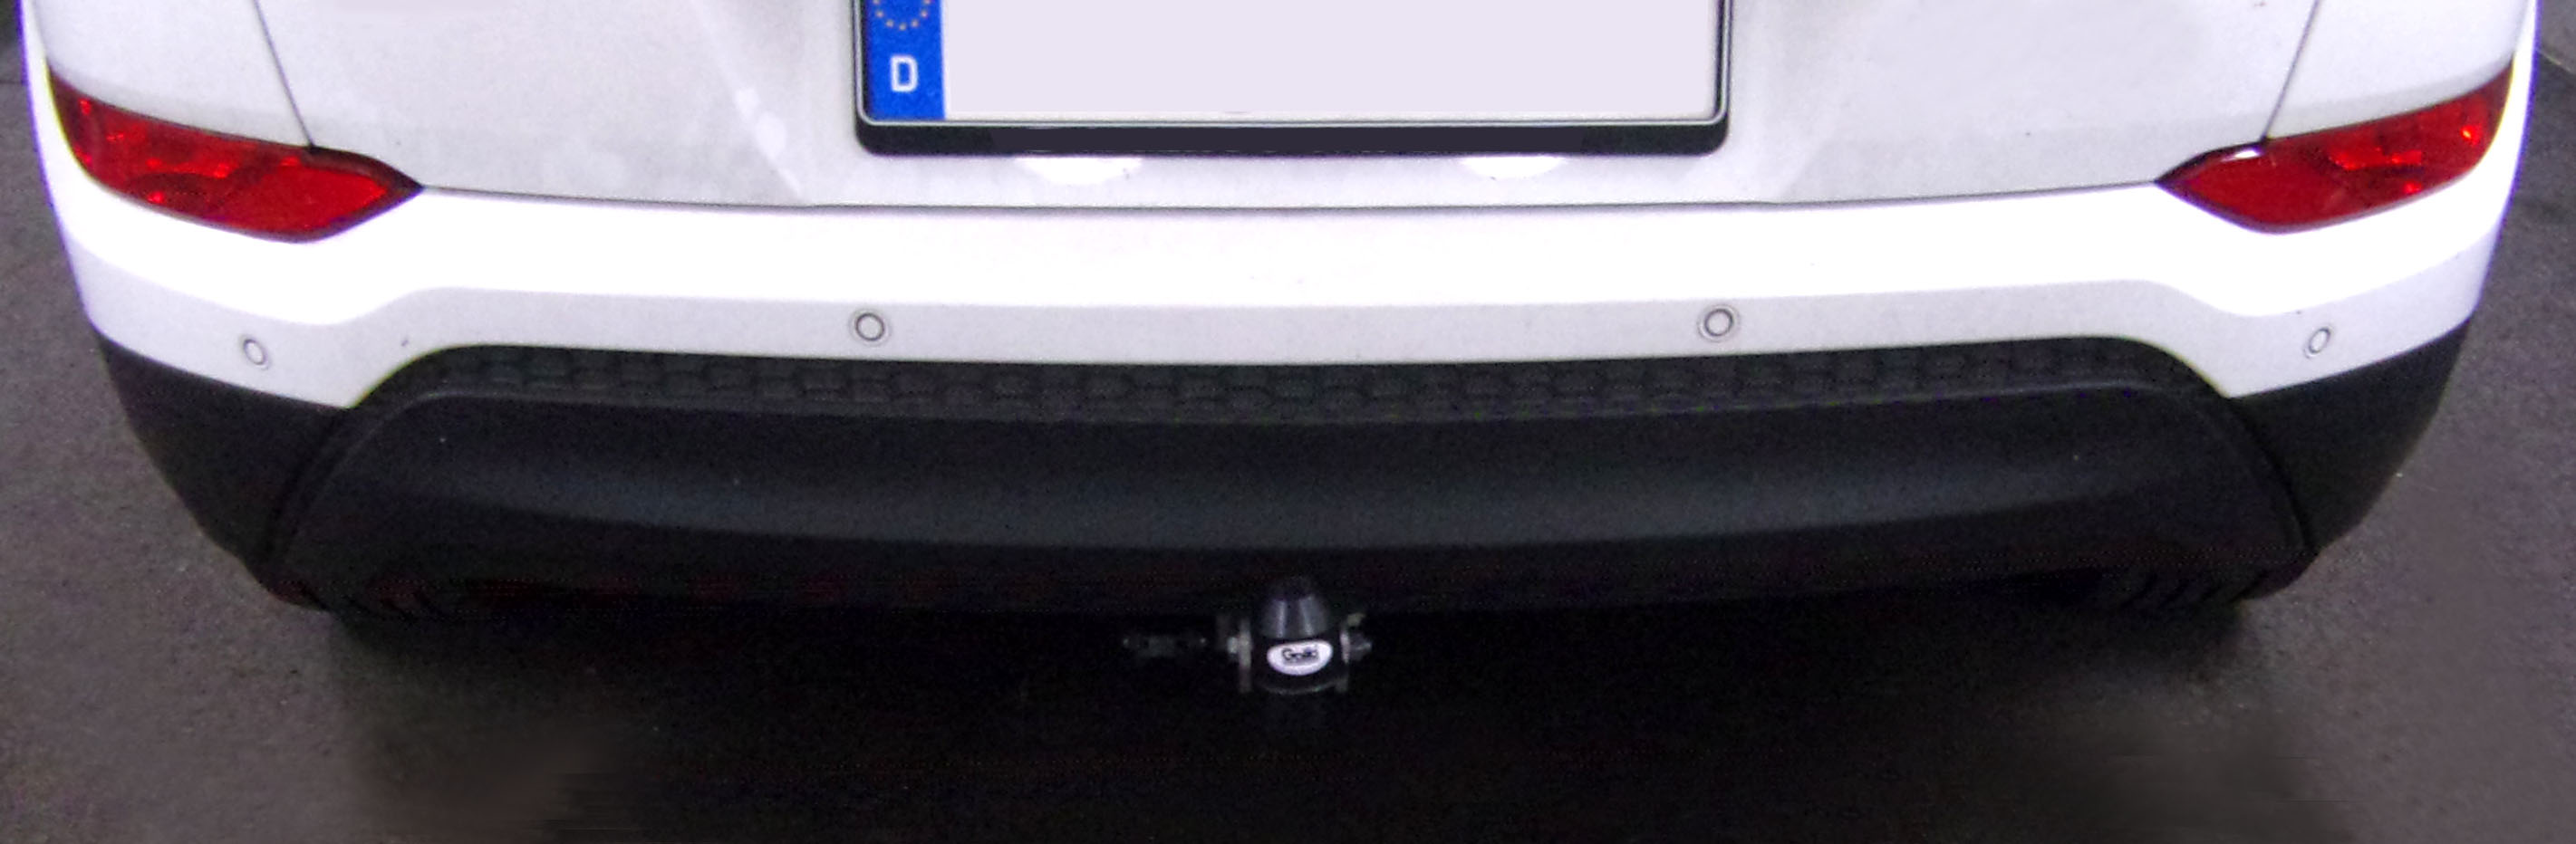 Anhängerkupplung für Hyundai Tucson 2015-2018 - starr